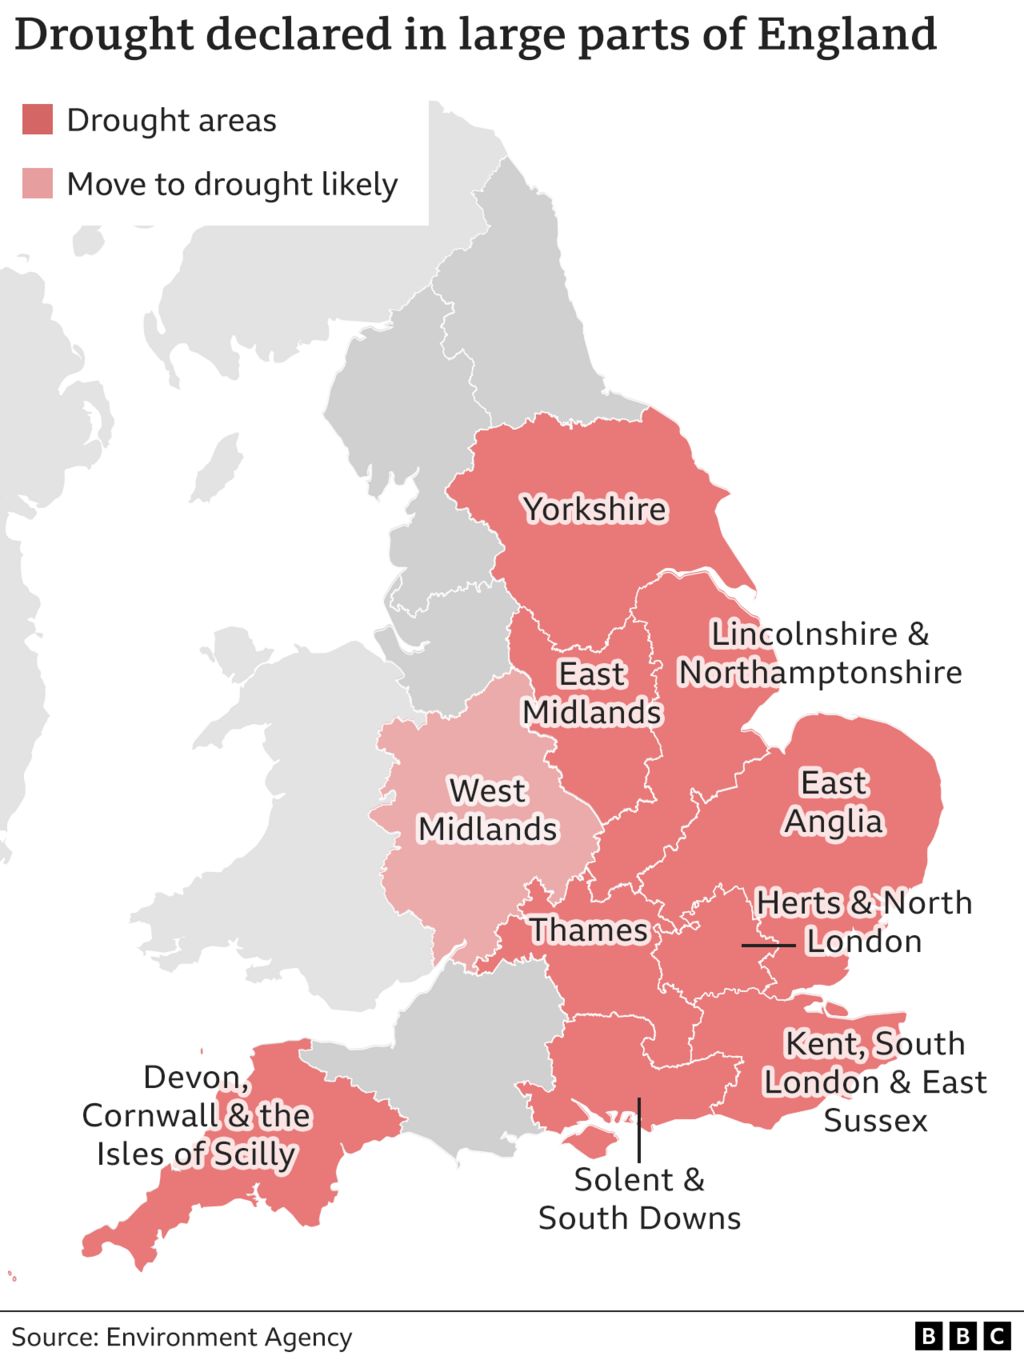 Карта, показывающая объявленные засушливые районы Англии